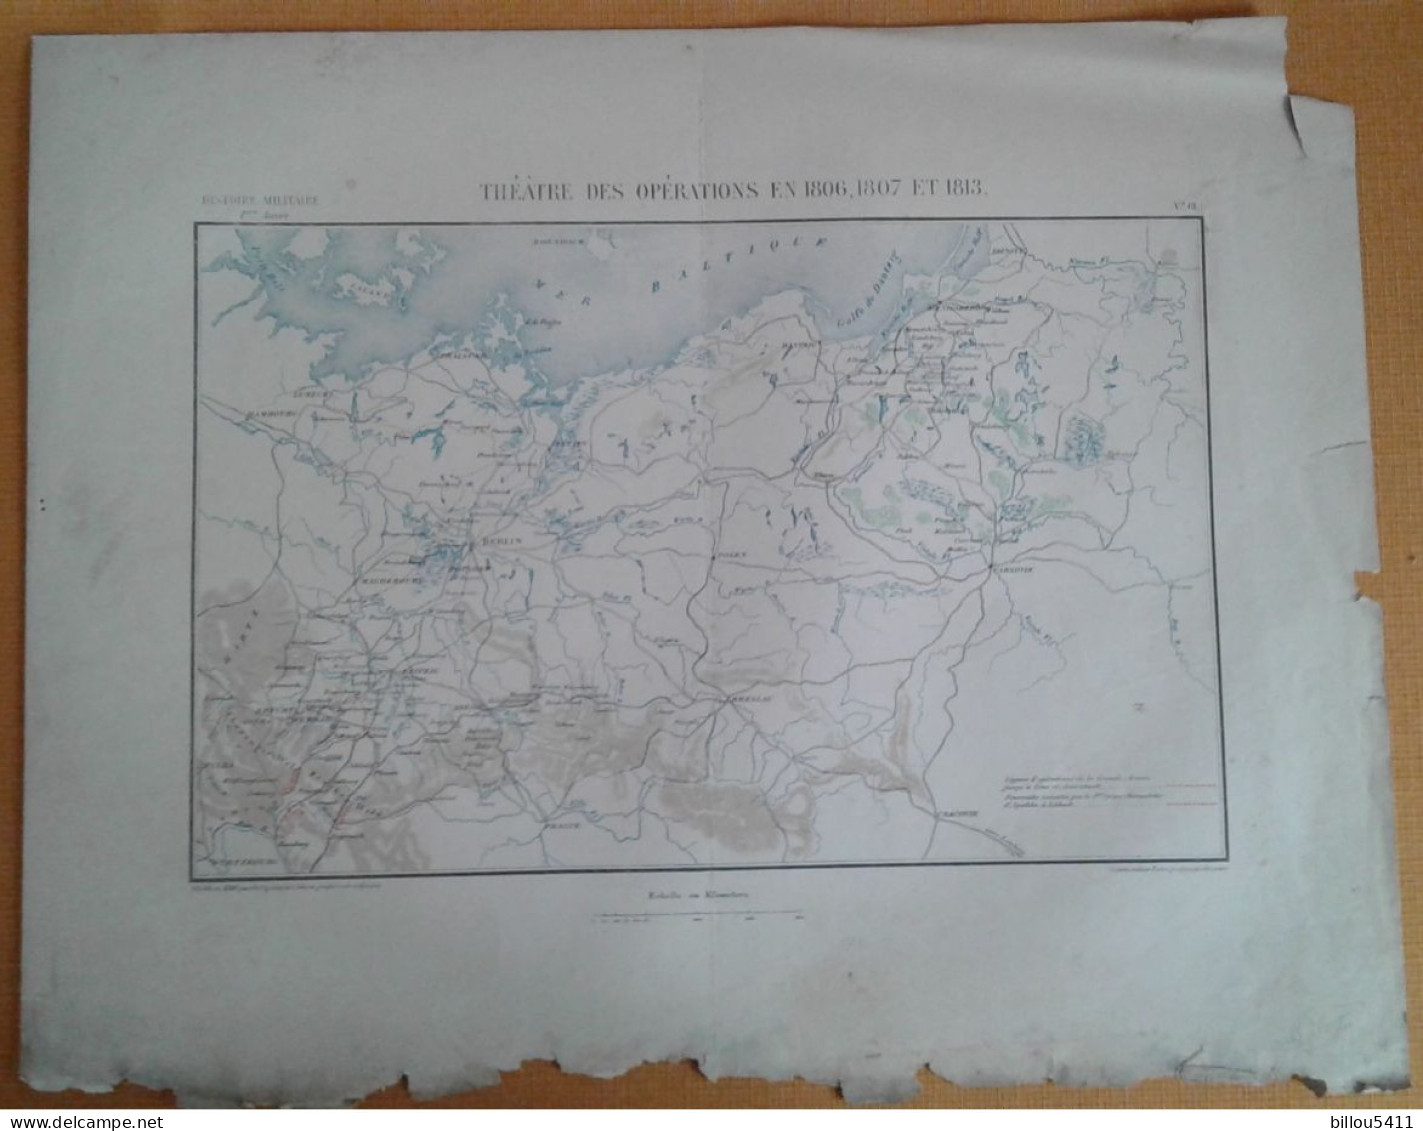 Carte  Histoire Militaire à Iéna Et Auerstaedt 1806/07/13 LUBECK ; BERLIN; LEIPZIG  Ech: En Kilométres - Mapas Topográficas